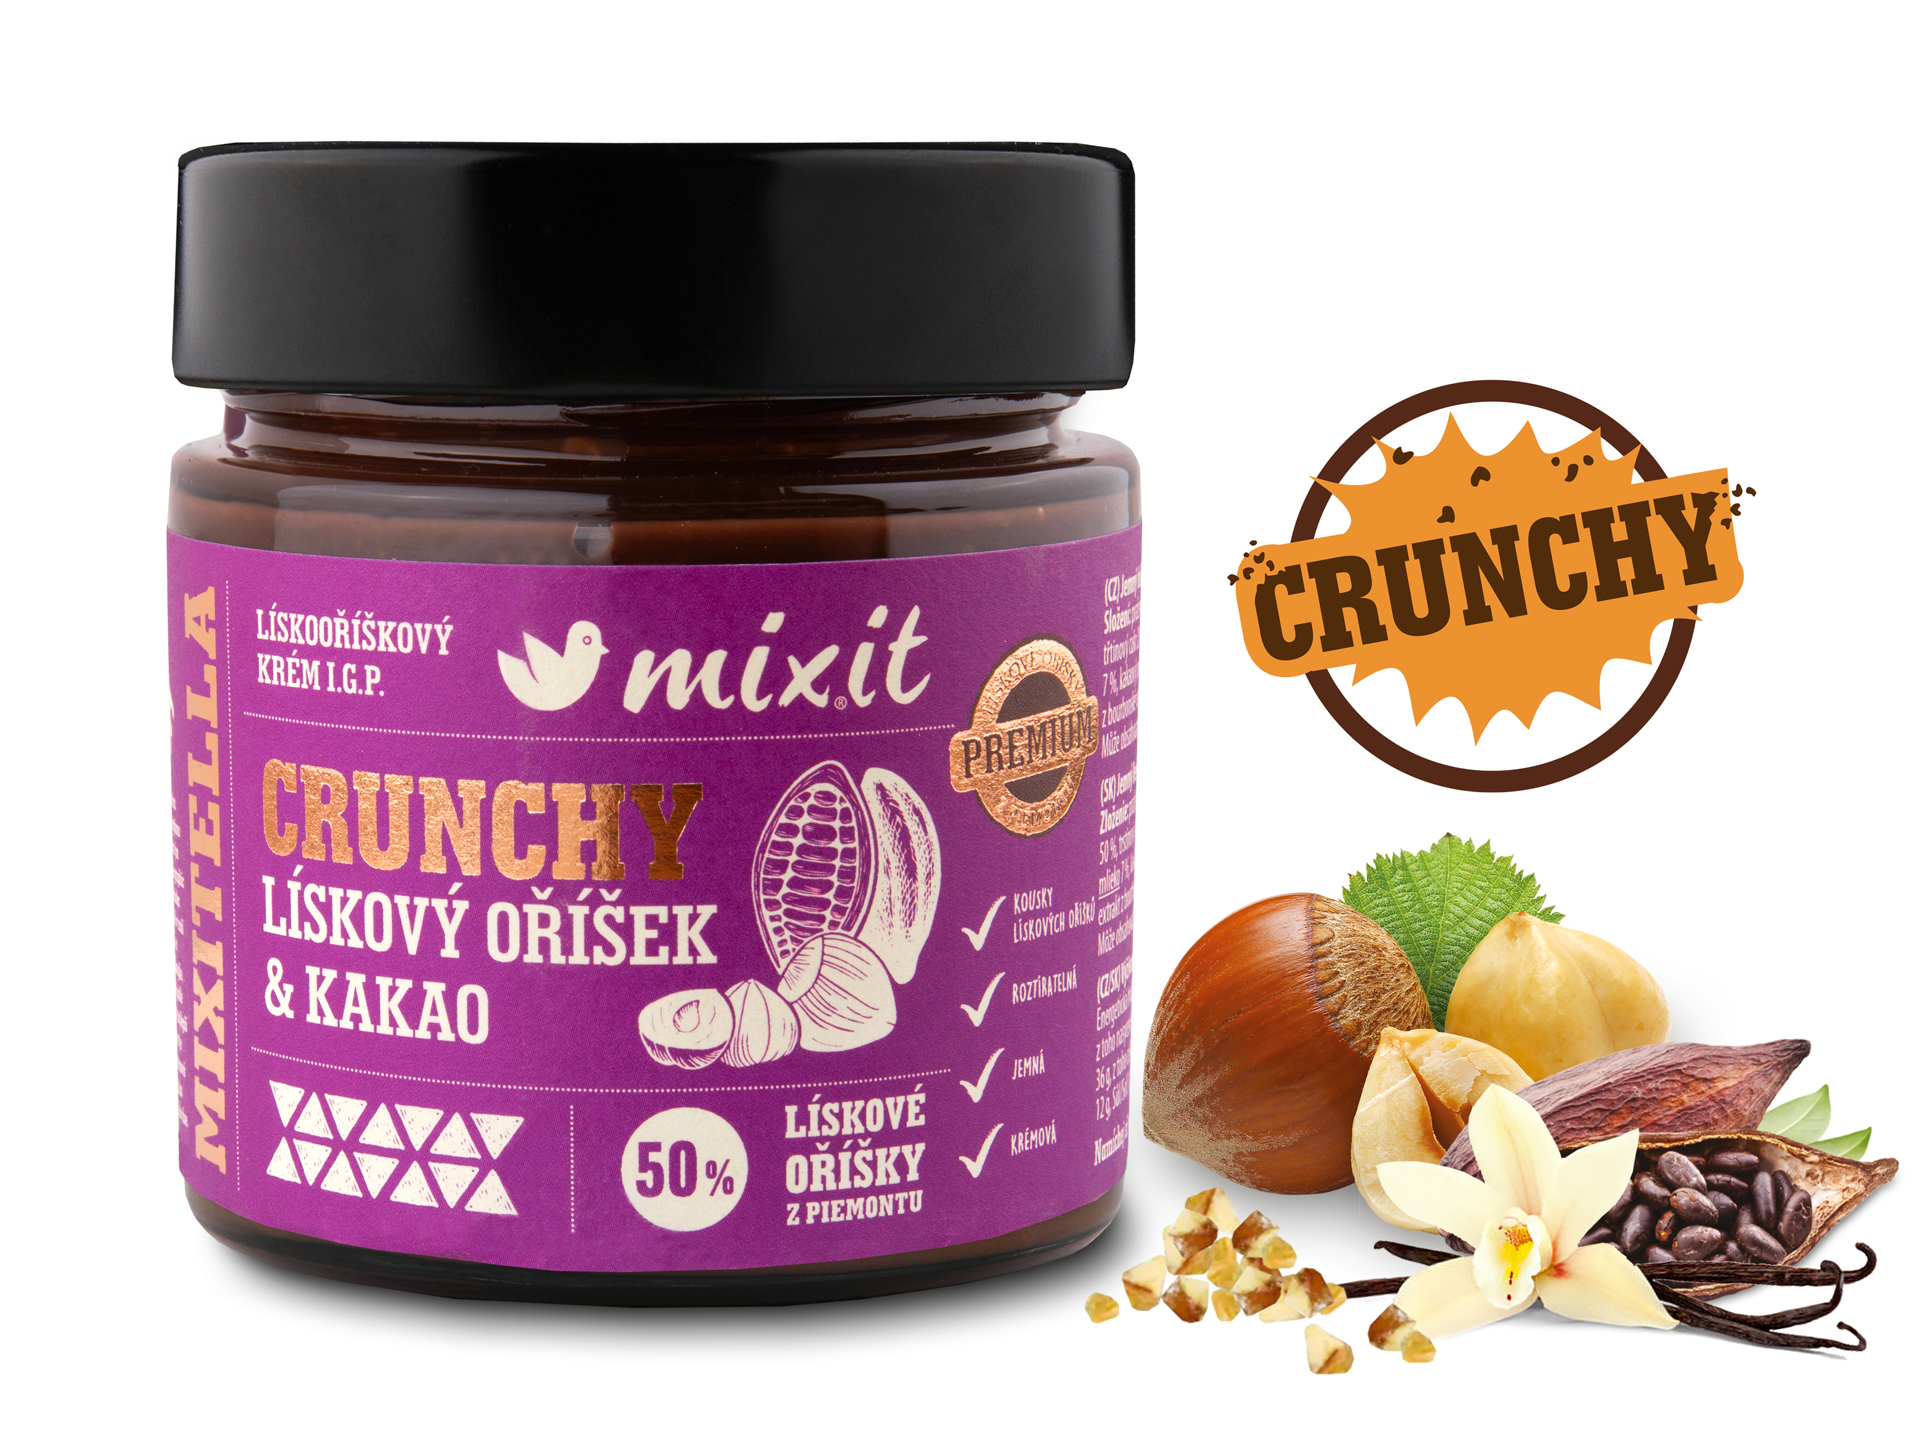 Mixitella Crunchy Premium Lieskový Oriešok z Piemontu Kakao - Mixit